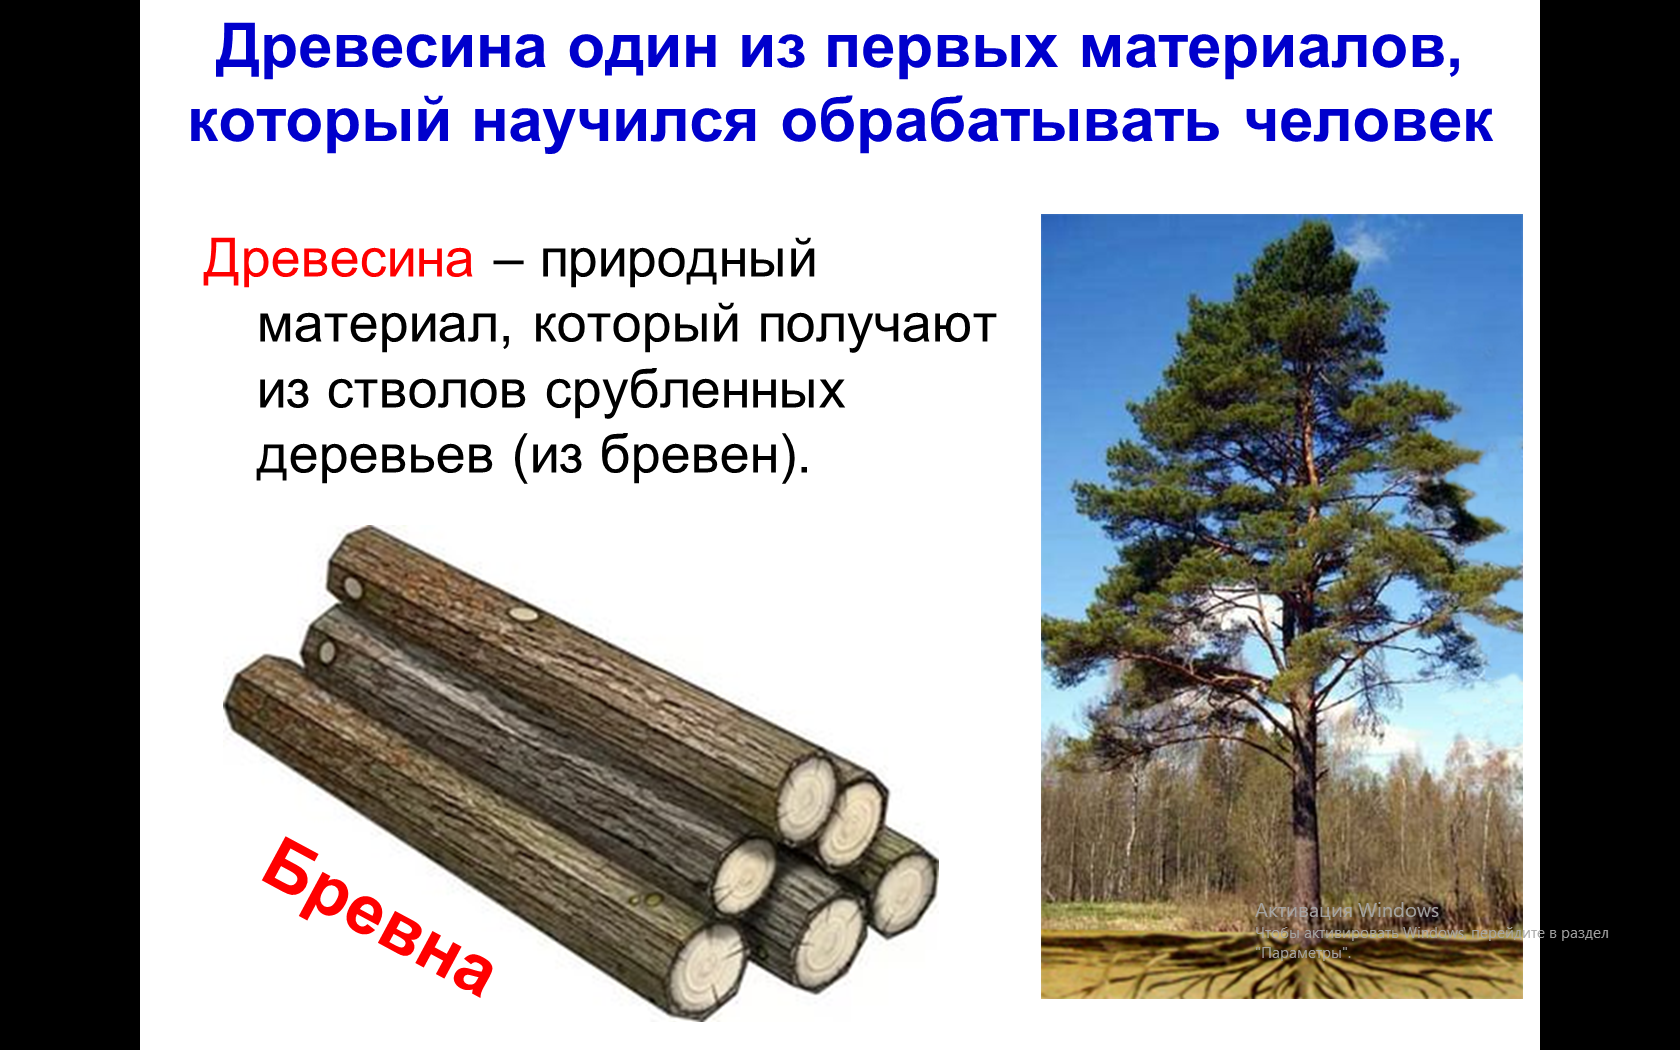 Древесина и древесные материалы